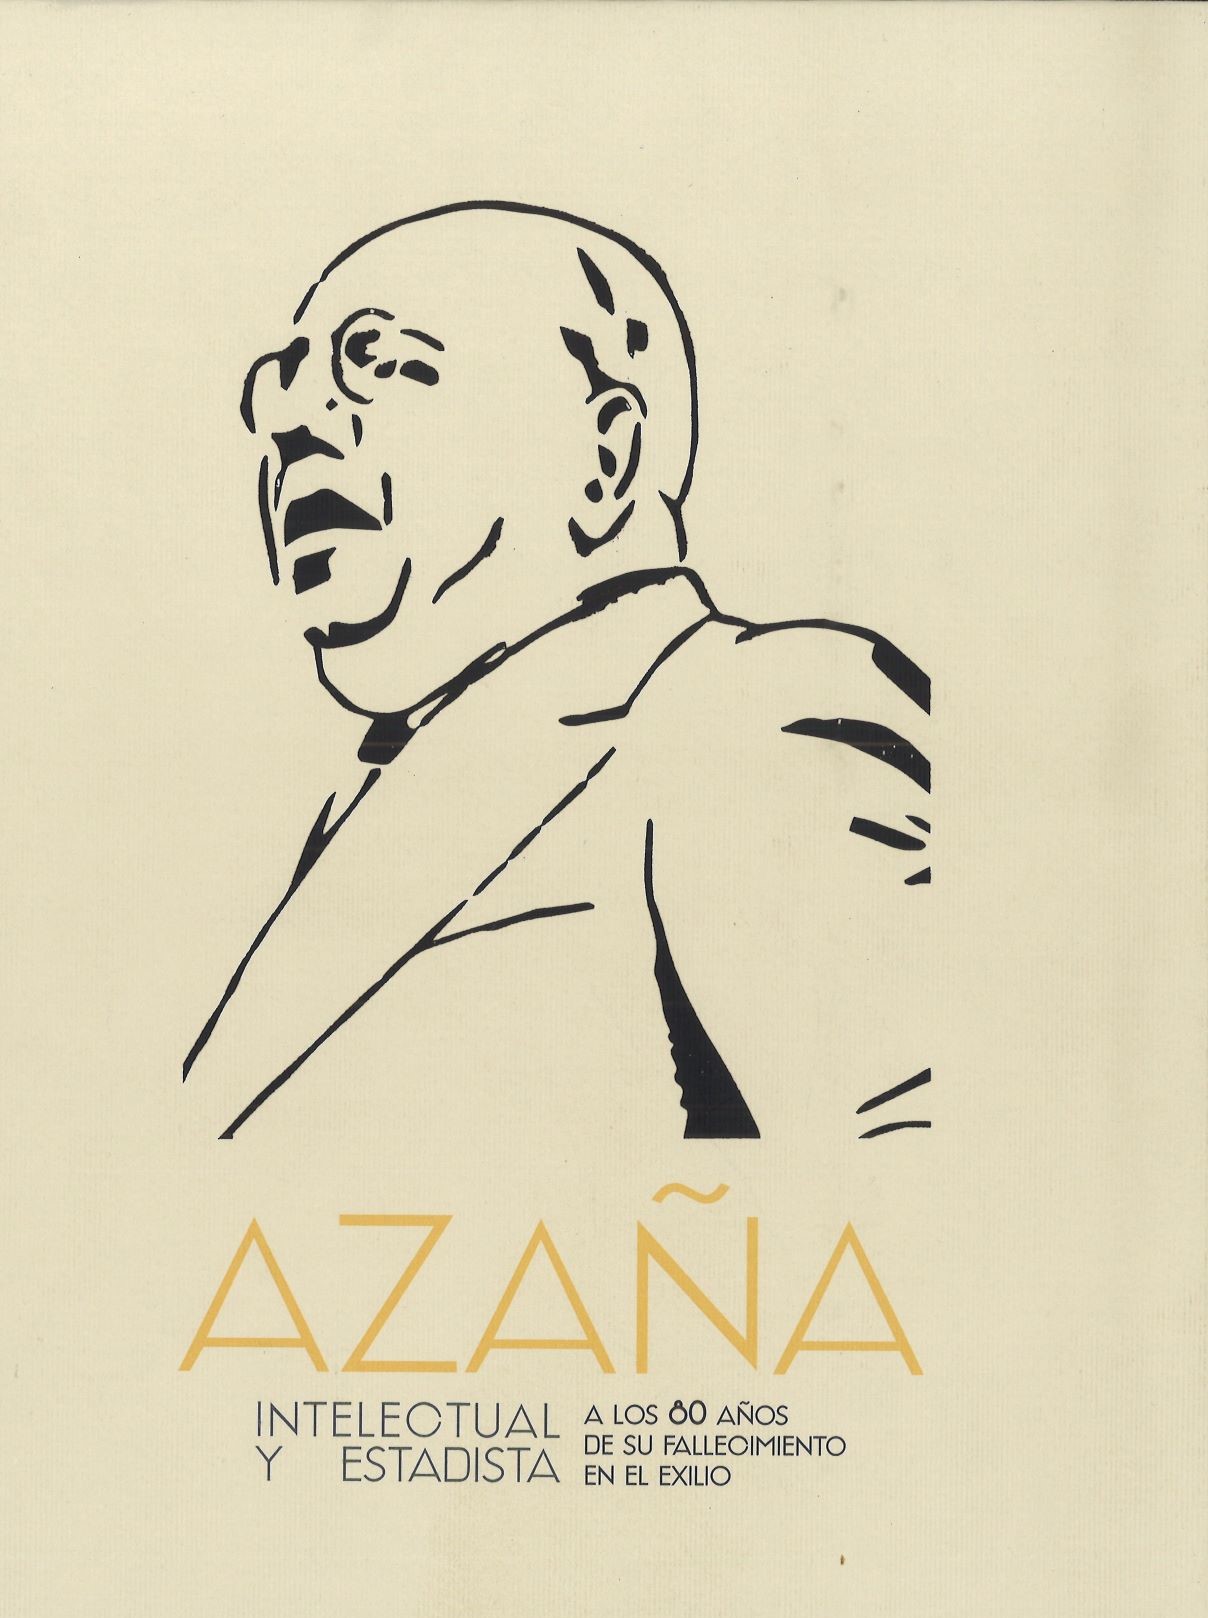 Imagen de portada del libro Azaña, intelectual y estadista